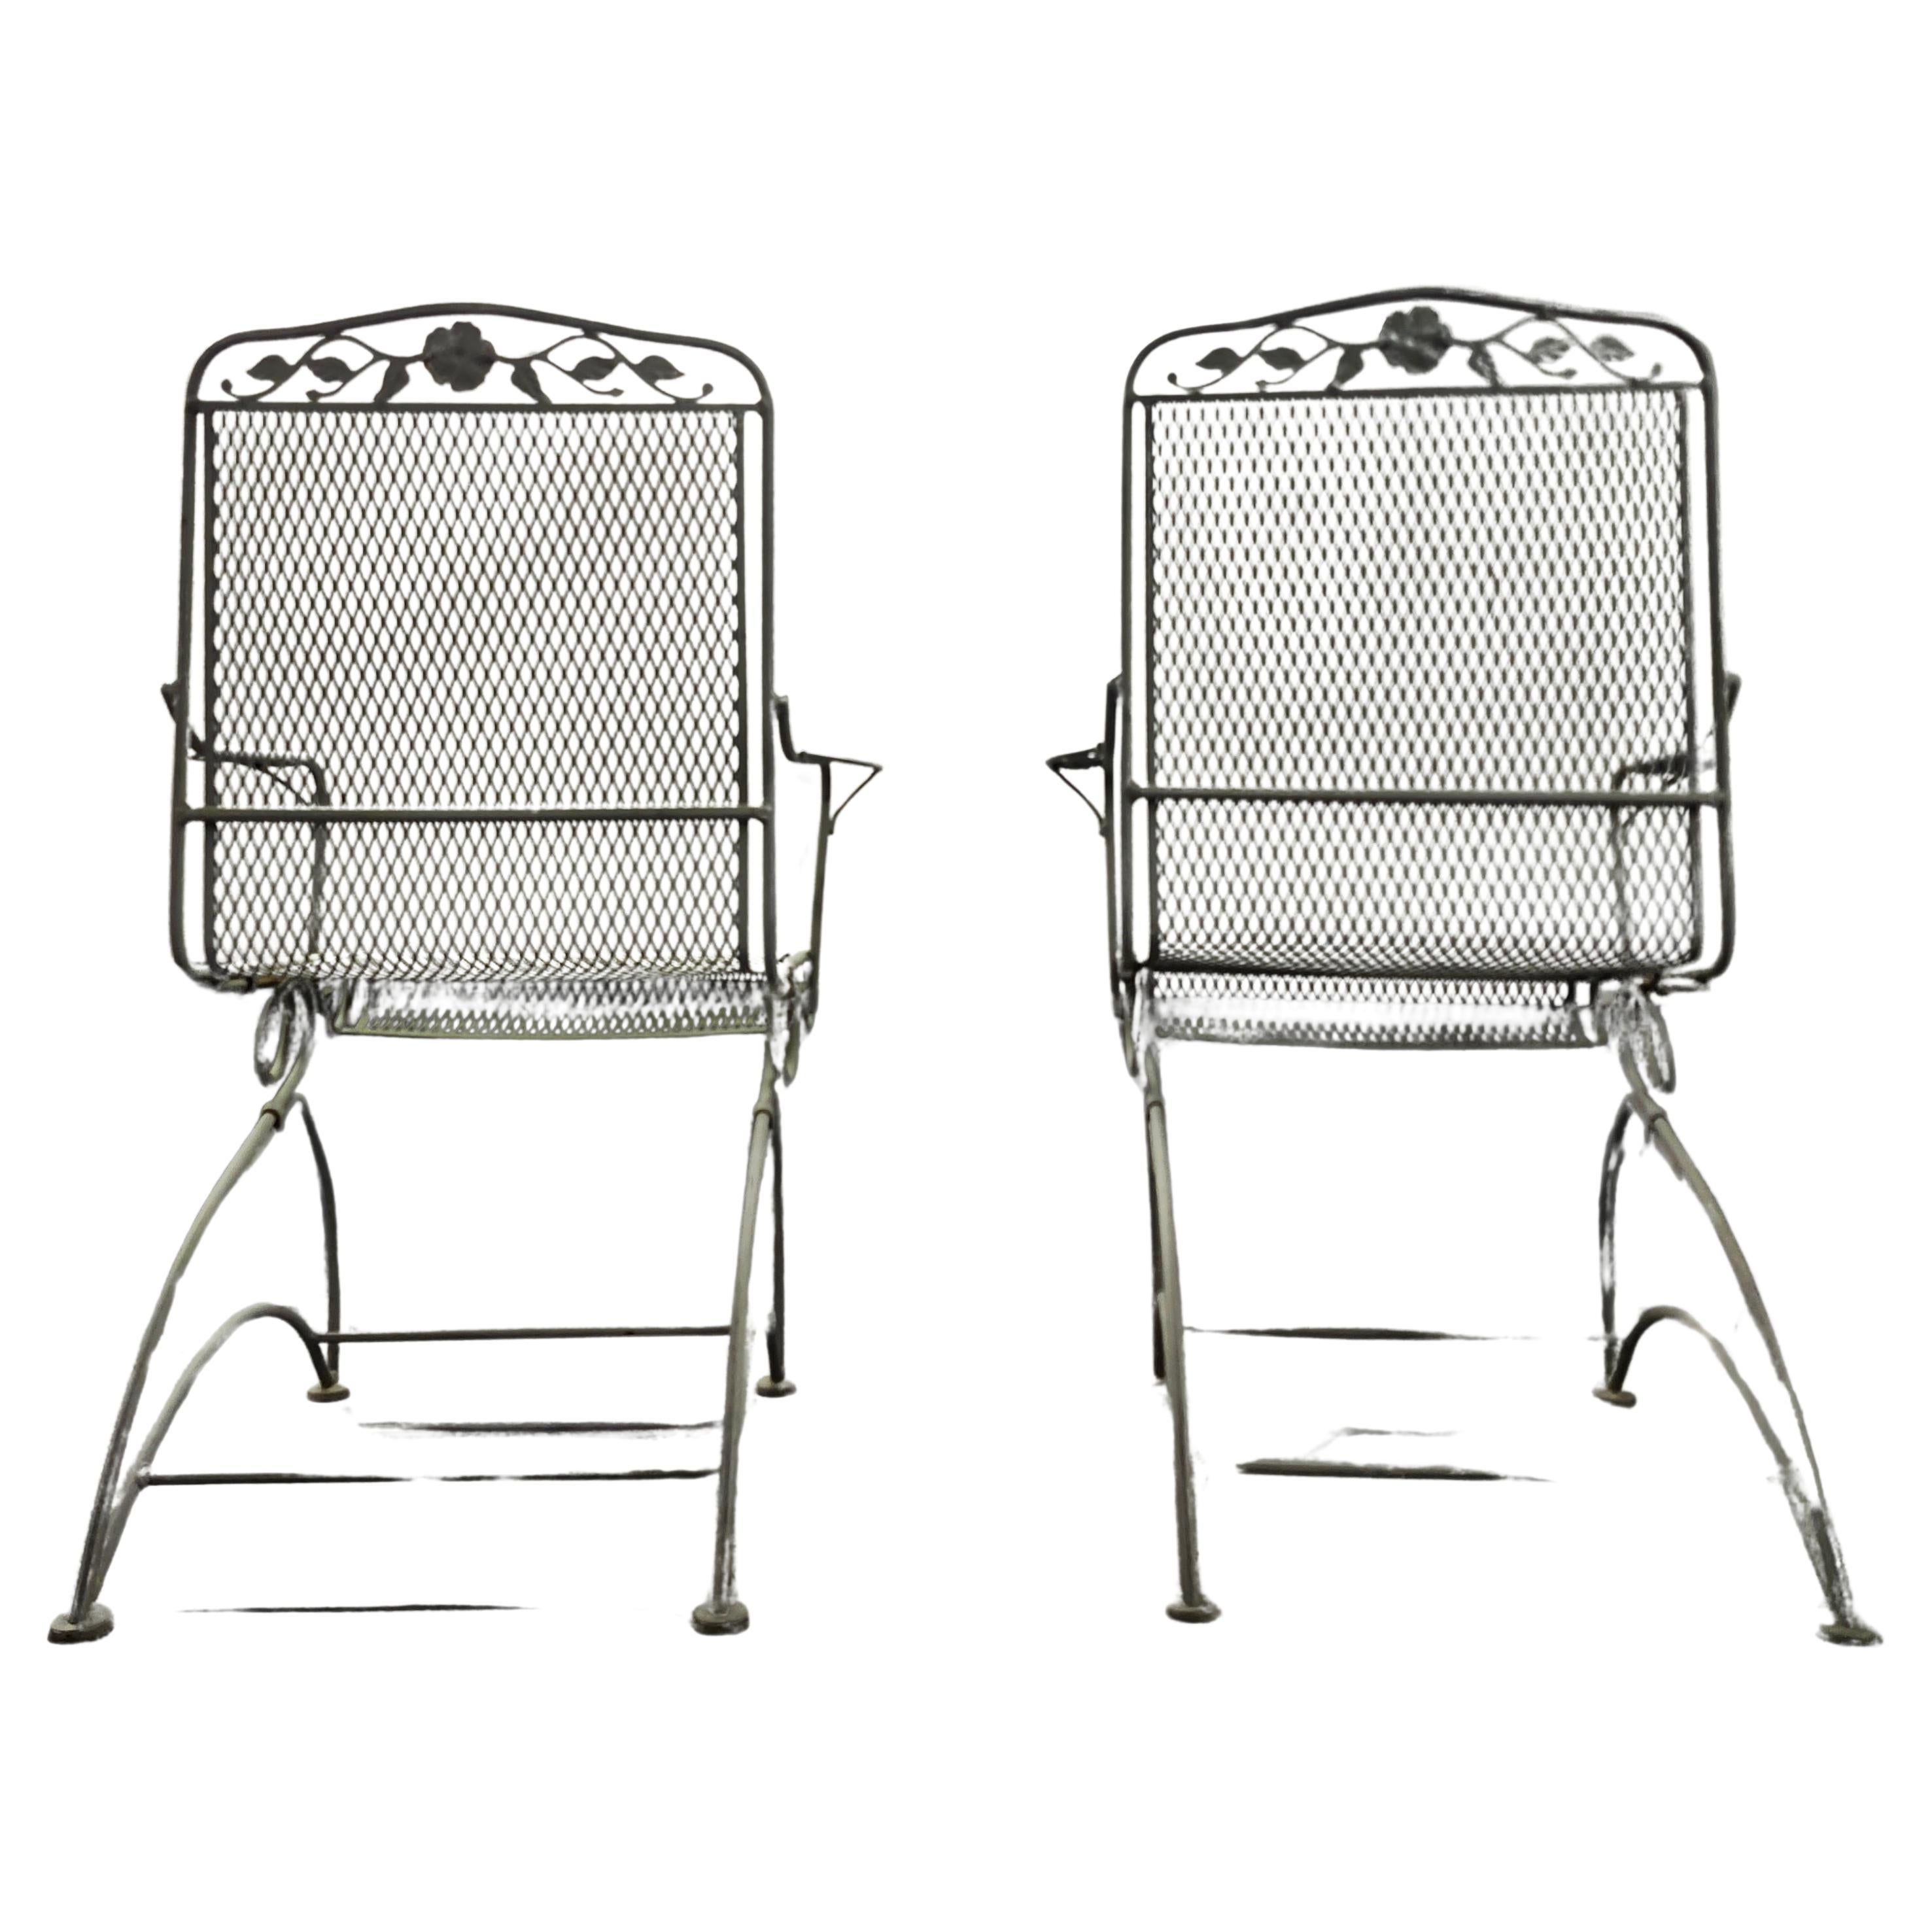 Disponible maintenant pour votre plaisir et prêt à être expédié est une paire de chaises de patio vintage en fer forgé par Woodard.

Cette paire de chaises en fer forgé est l'accessoire idéal pour tout jardin, terrasse ou véranda. Savourez un verre